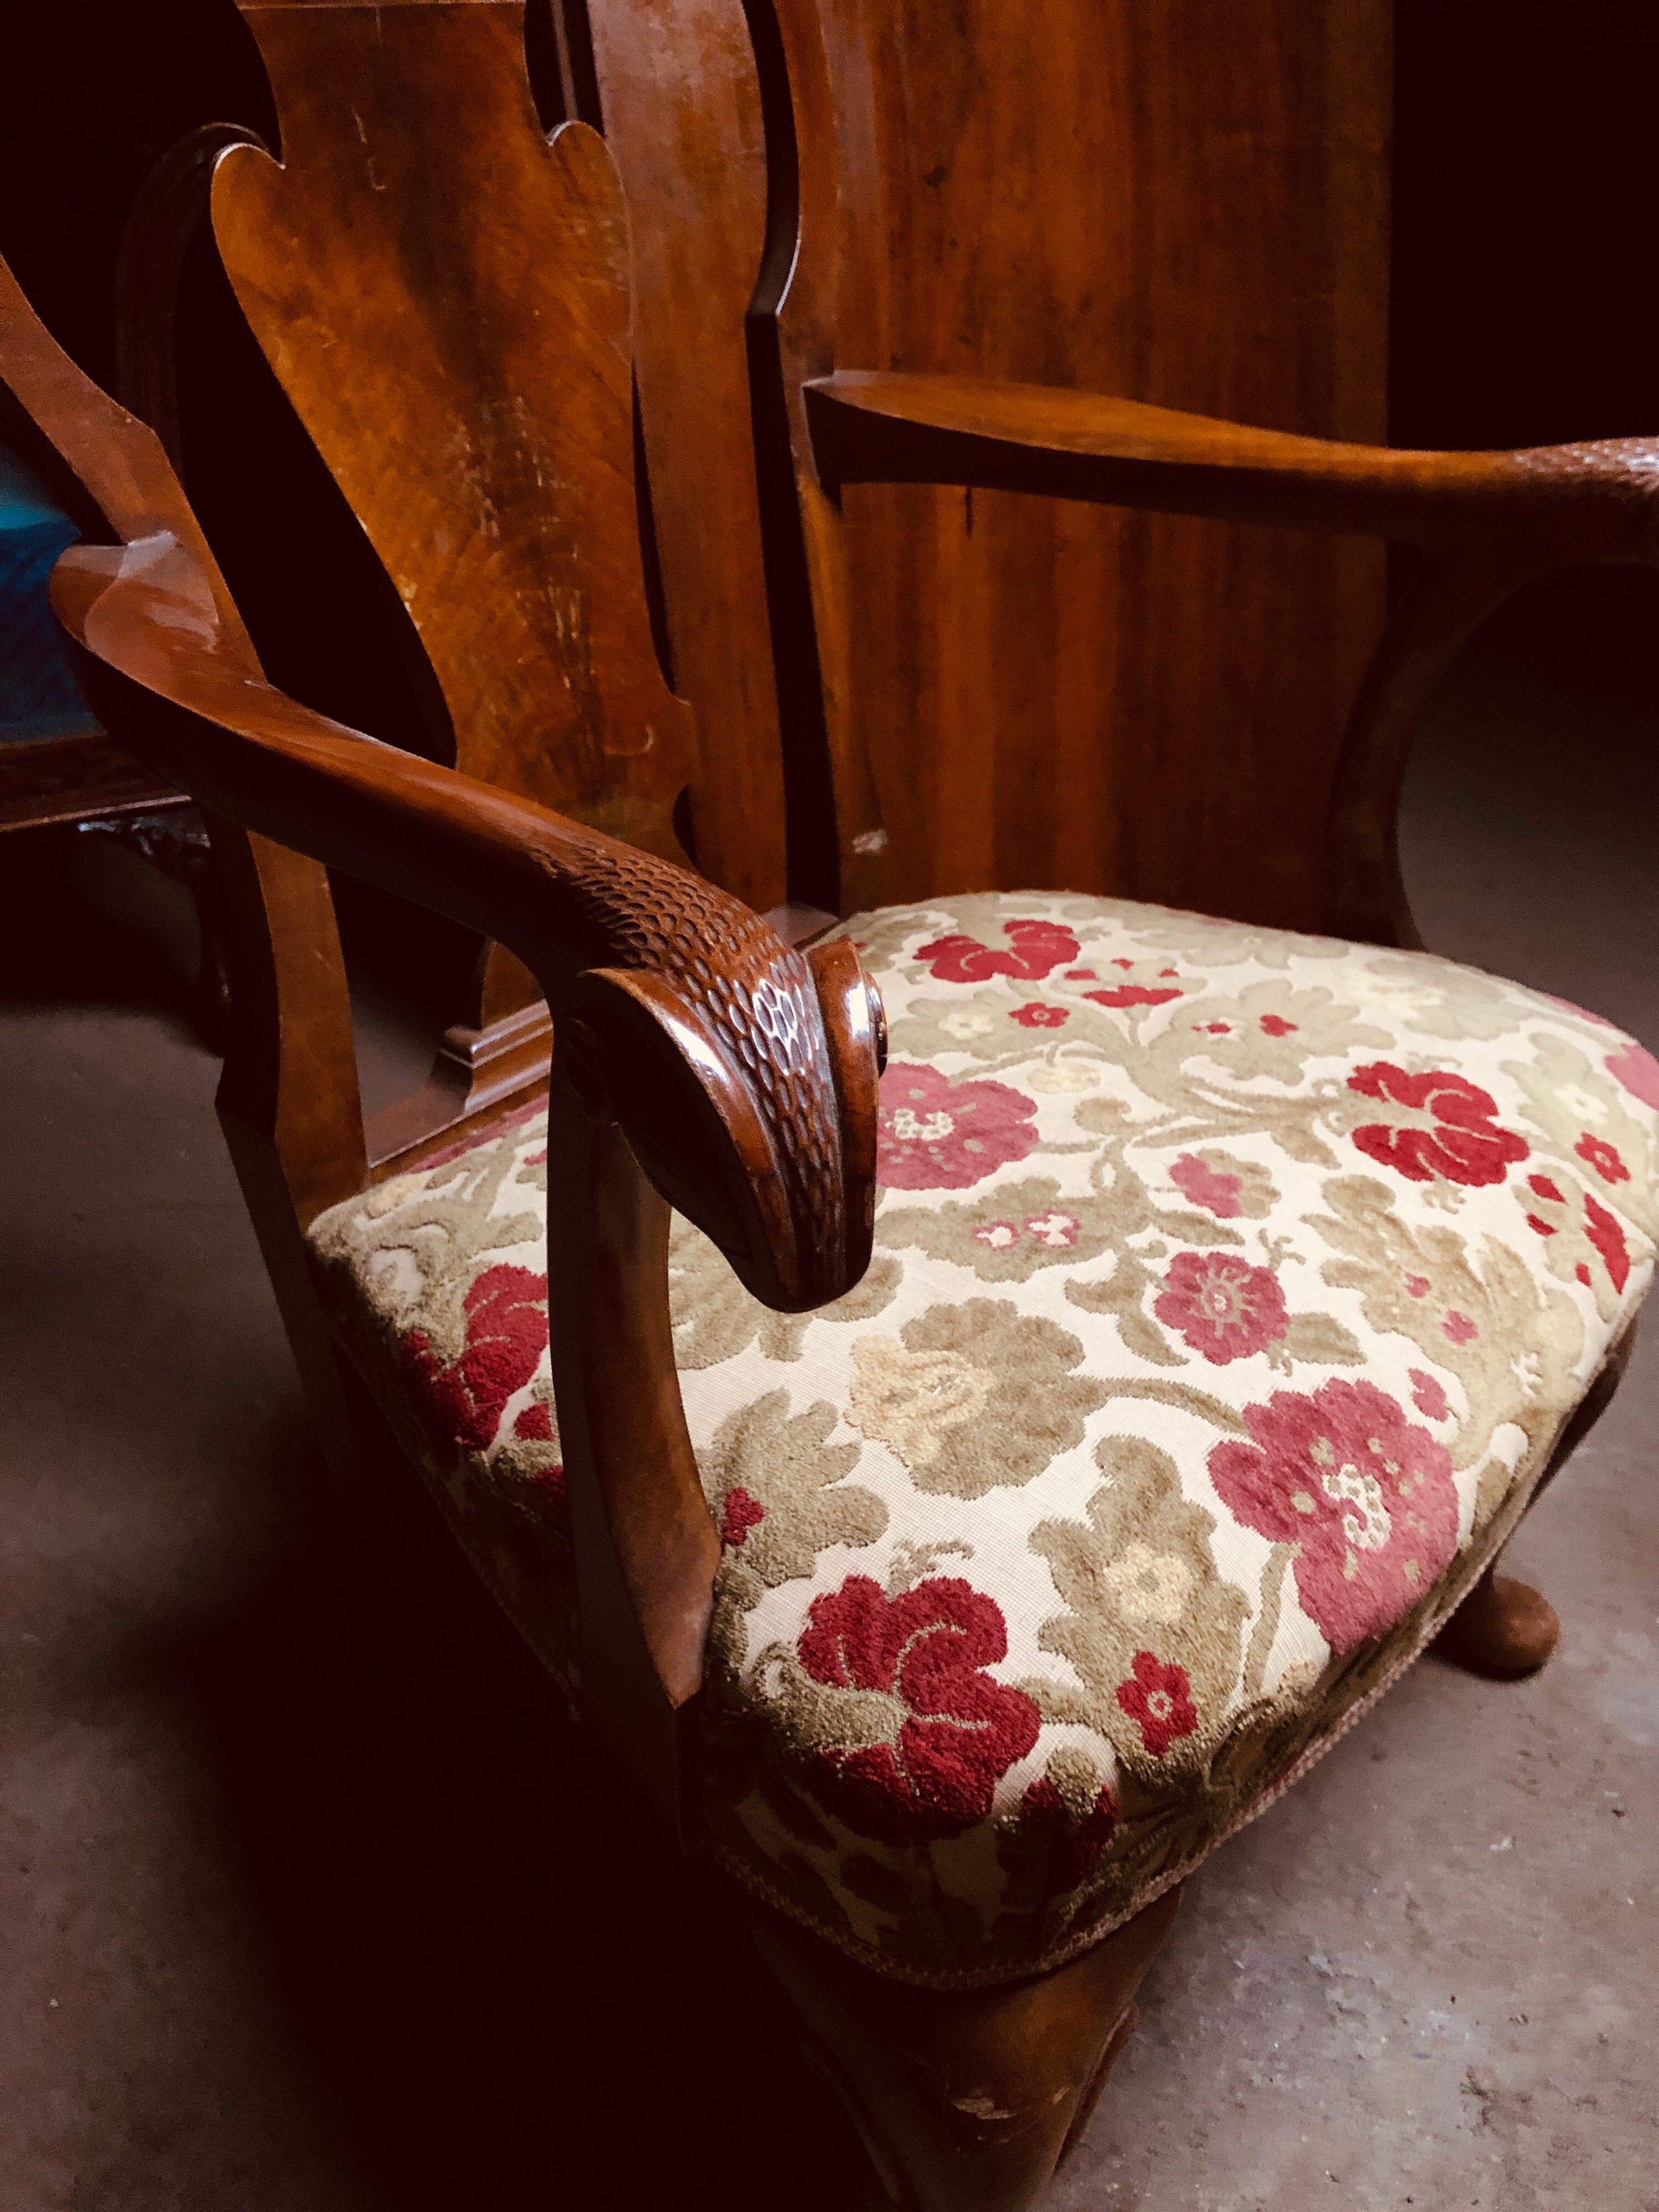 Paire de fauteuils français en acajou avec tapisserie d'origine.
Les accoudoirs sont sculptés à la main avec une tête de bélier à l'extrémité.
Il y a un canapé à deux places qui pourrait correspondre parfaitement.
France, datant d'environ 1920.